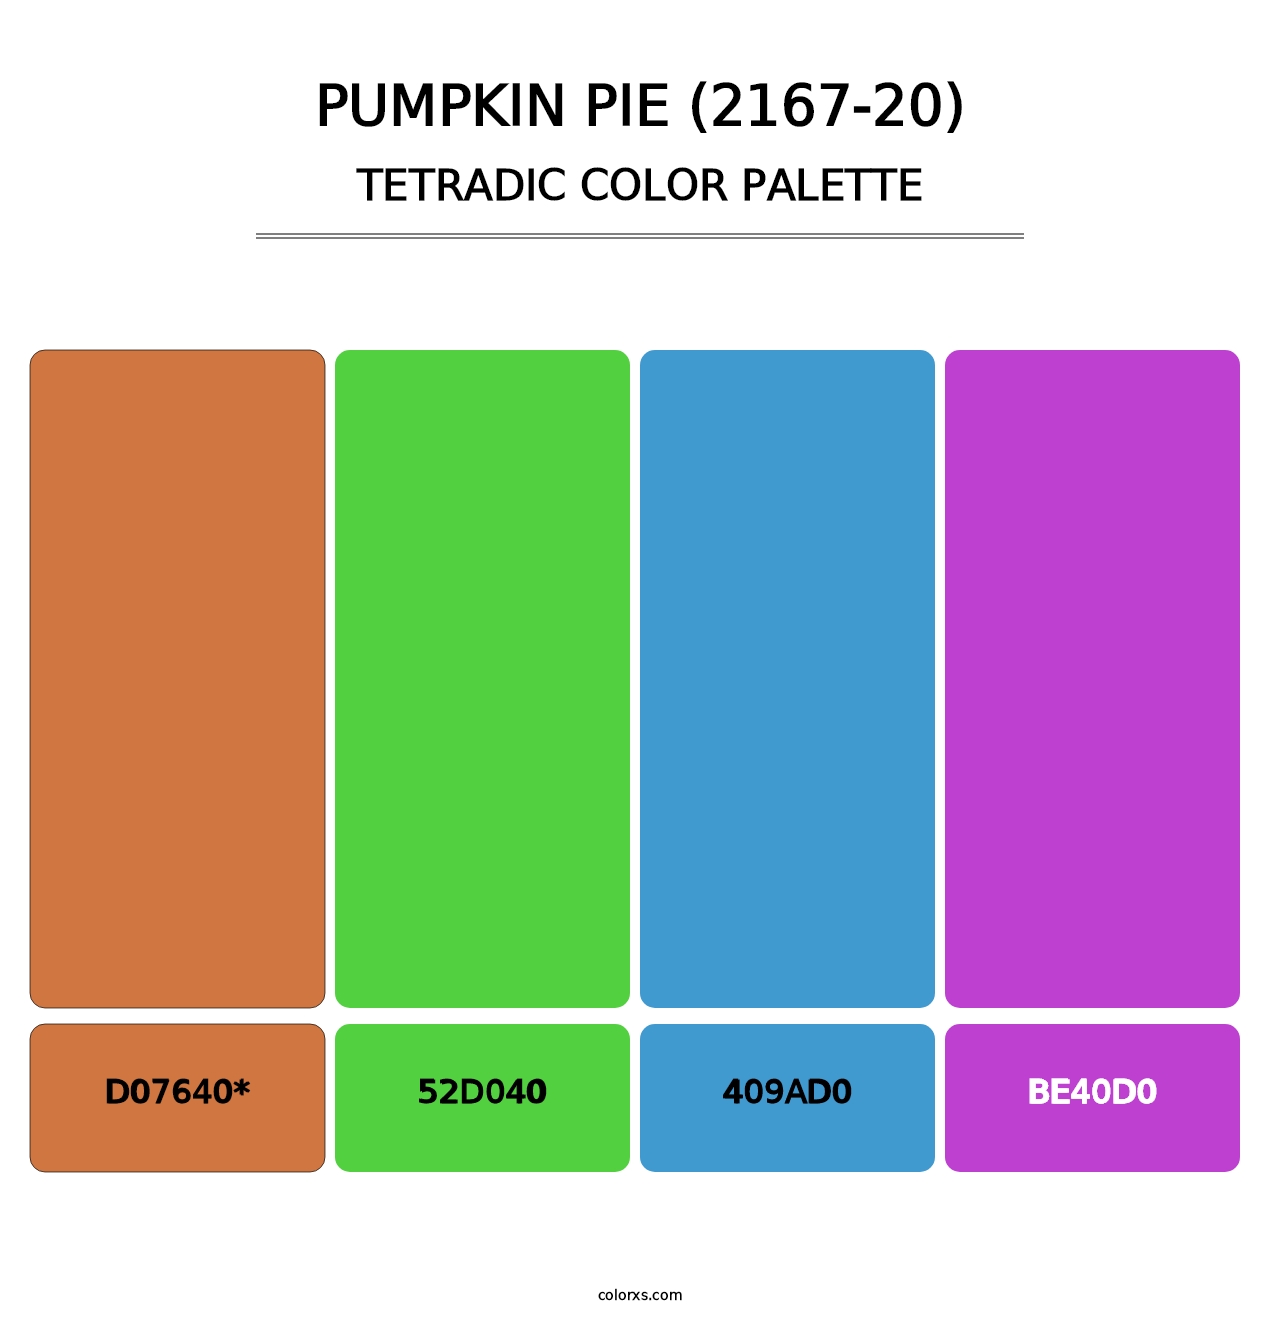 Pumpkin Pie (2167-20) - Tetradic Color Palette